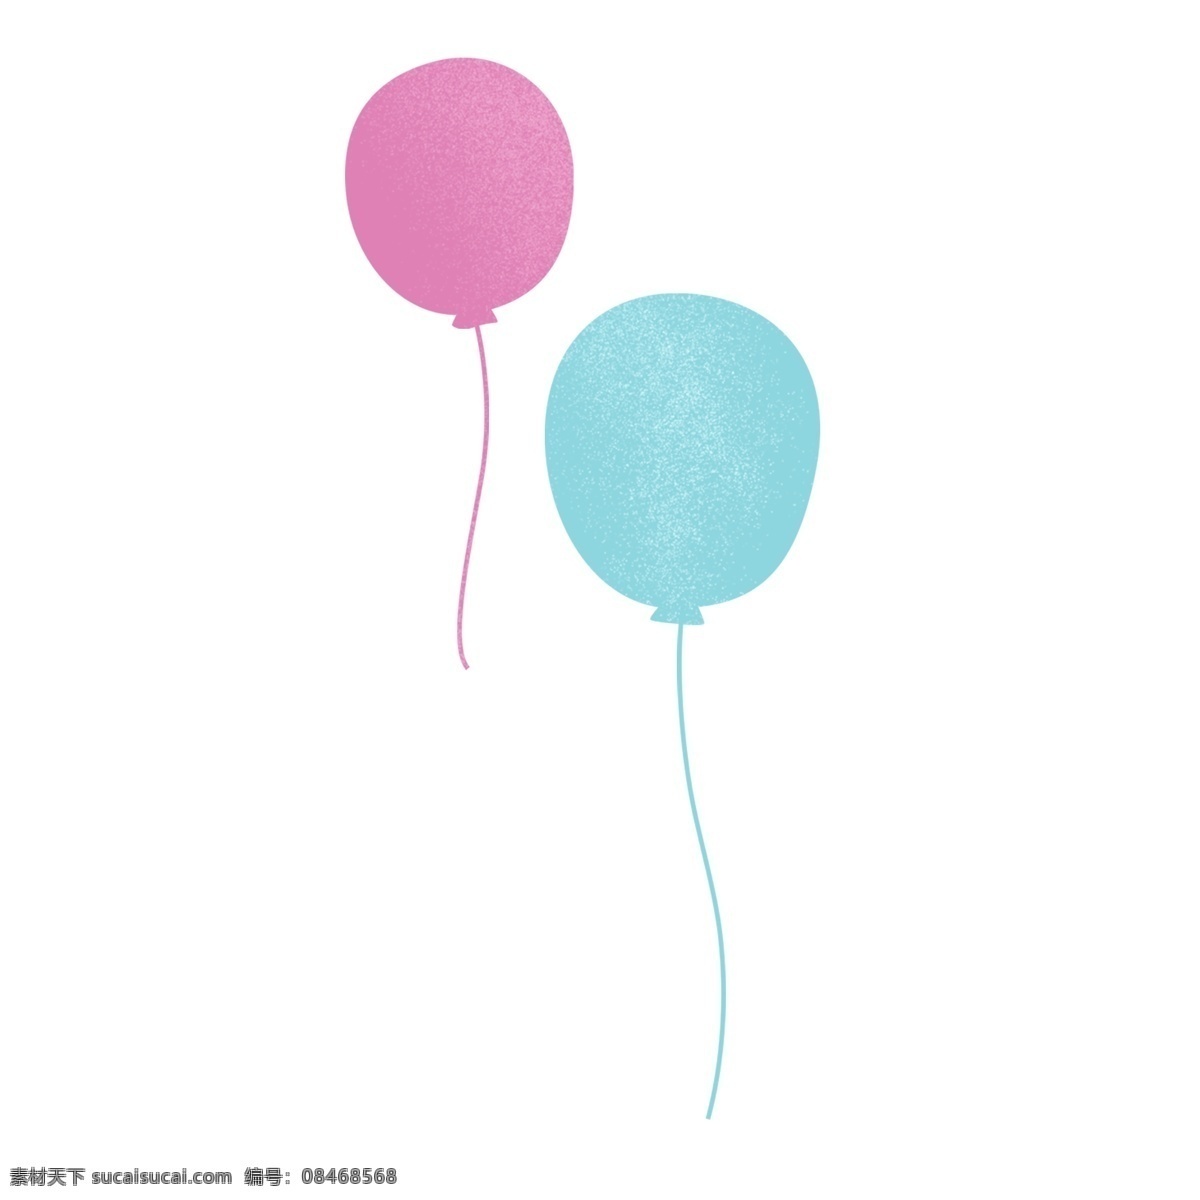 一个 粉色 蓝色 气球 粉色的 蓝色的 彩灯装饰 玩具 节日 装饰 创意 气泡 庆典 庆祝 生日 活动 节日氛围